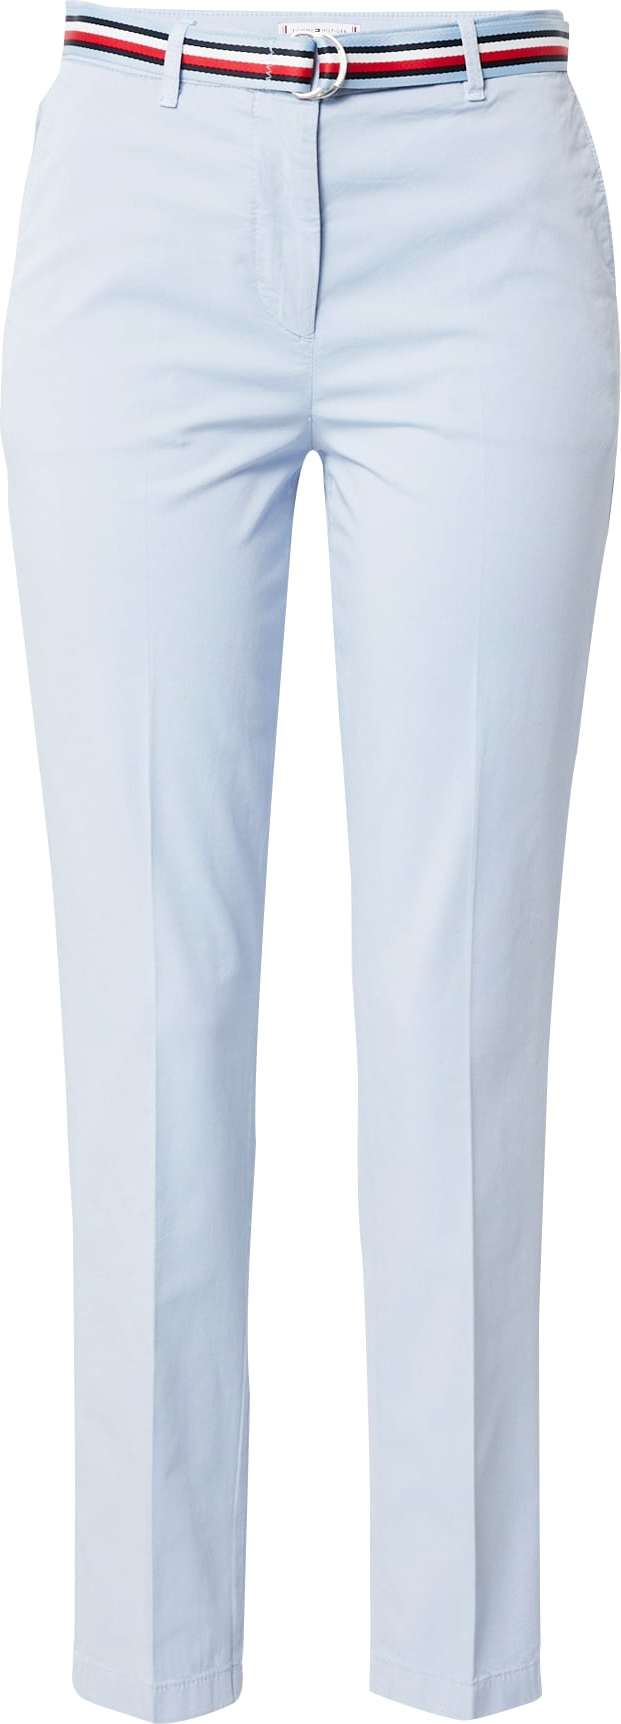 TOMMY HILFIGER Chino kalhoty 'Hailey' námořnická modř / světlemodrá / červená / bílá